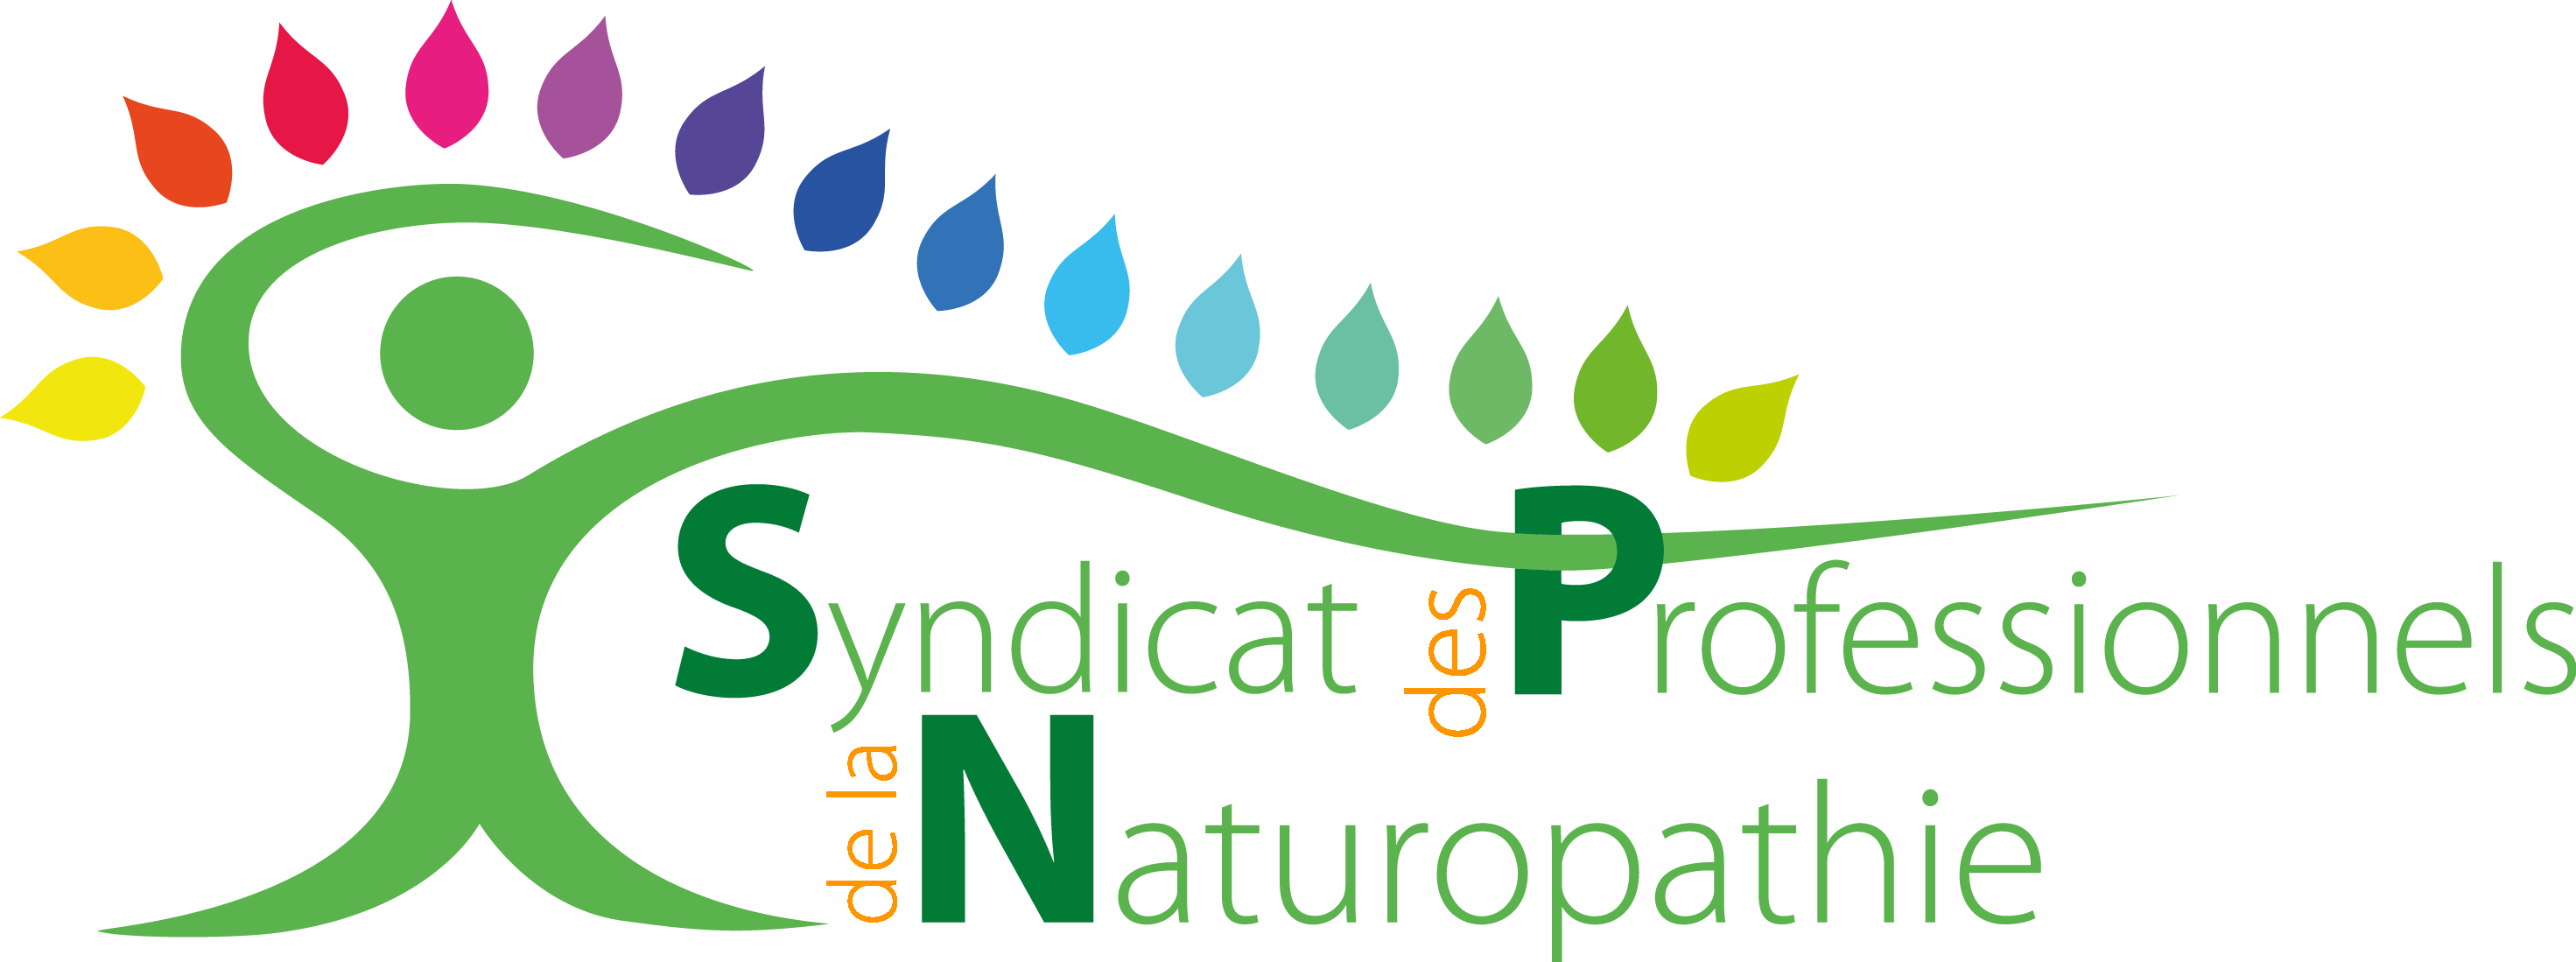 Votre Naturopathe virginia est membre du syndicat des professionnels de la Naturopathie